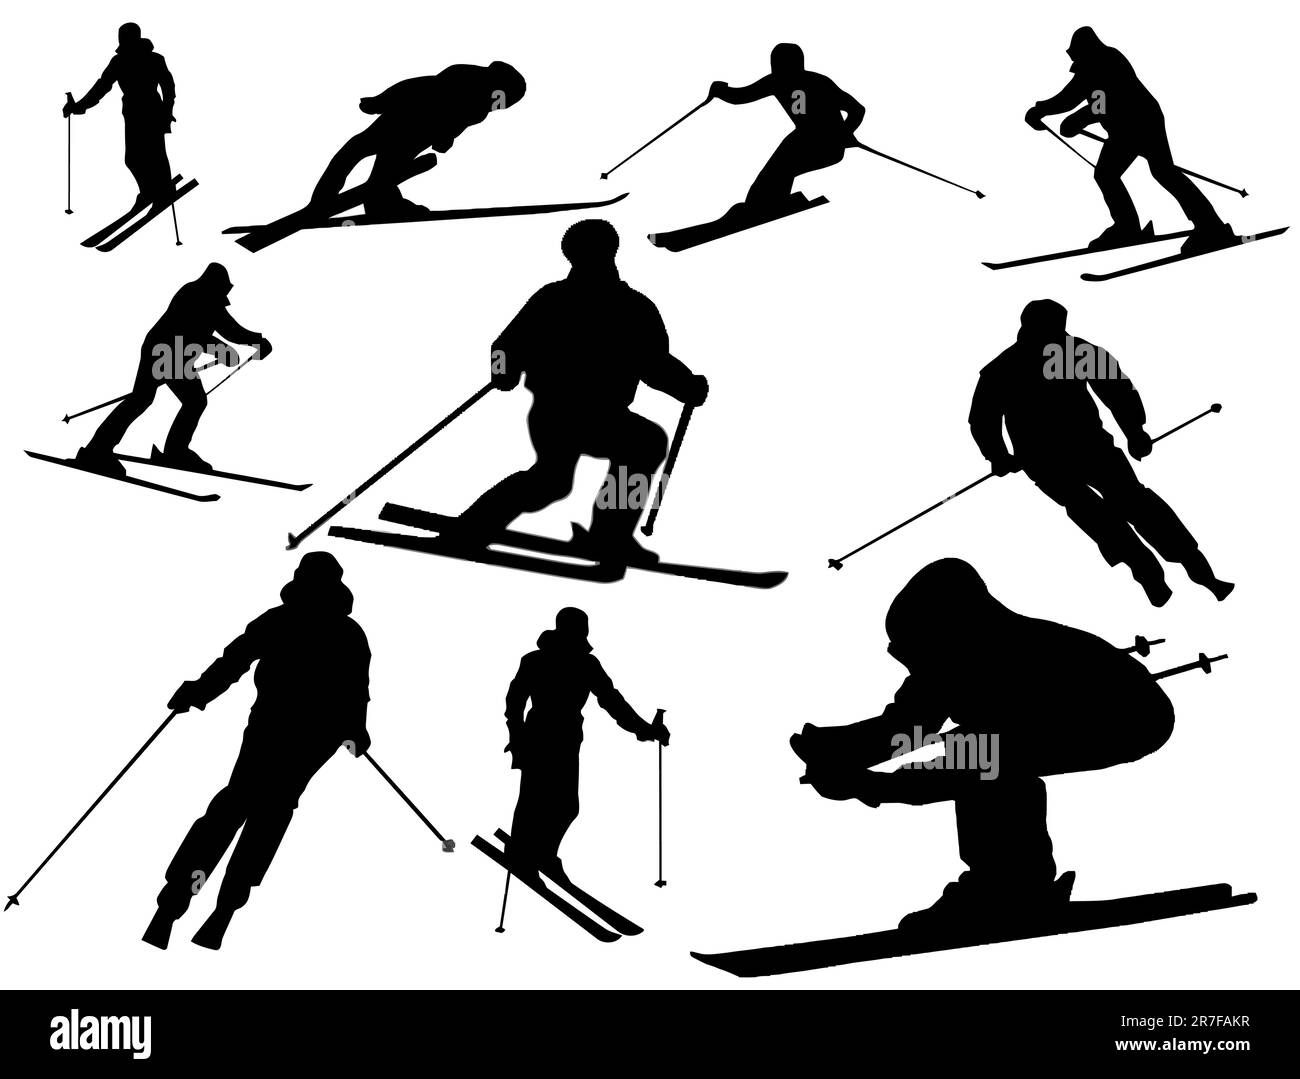 Collection vectorielle de silhouettes isolées de ski alpin sur fond blanc Illustration de Vecteur